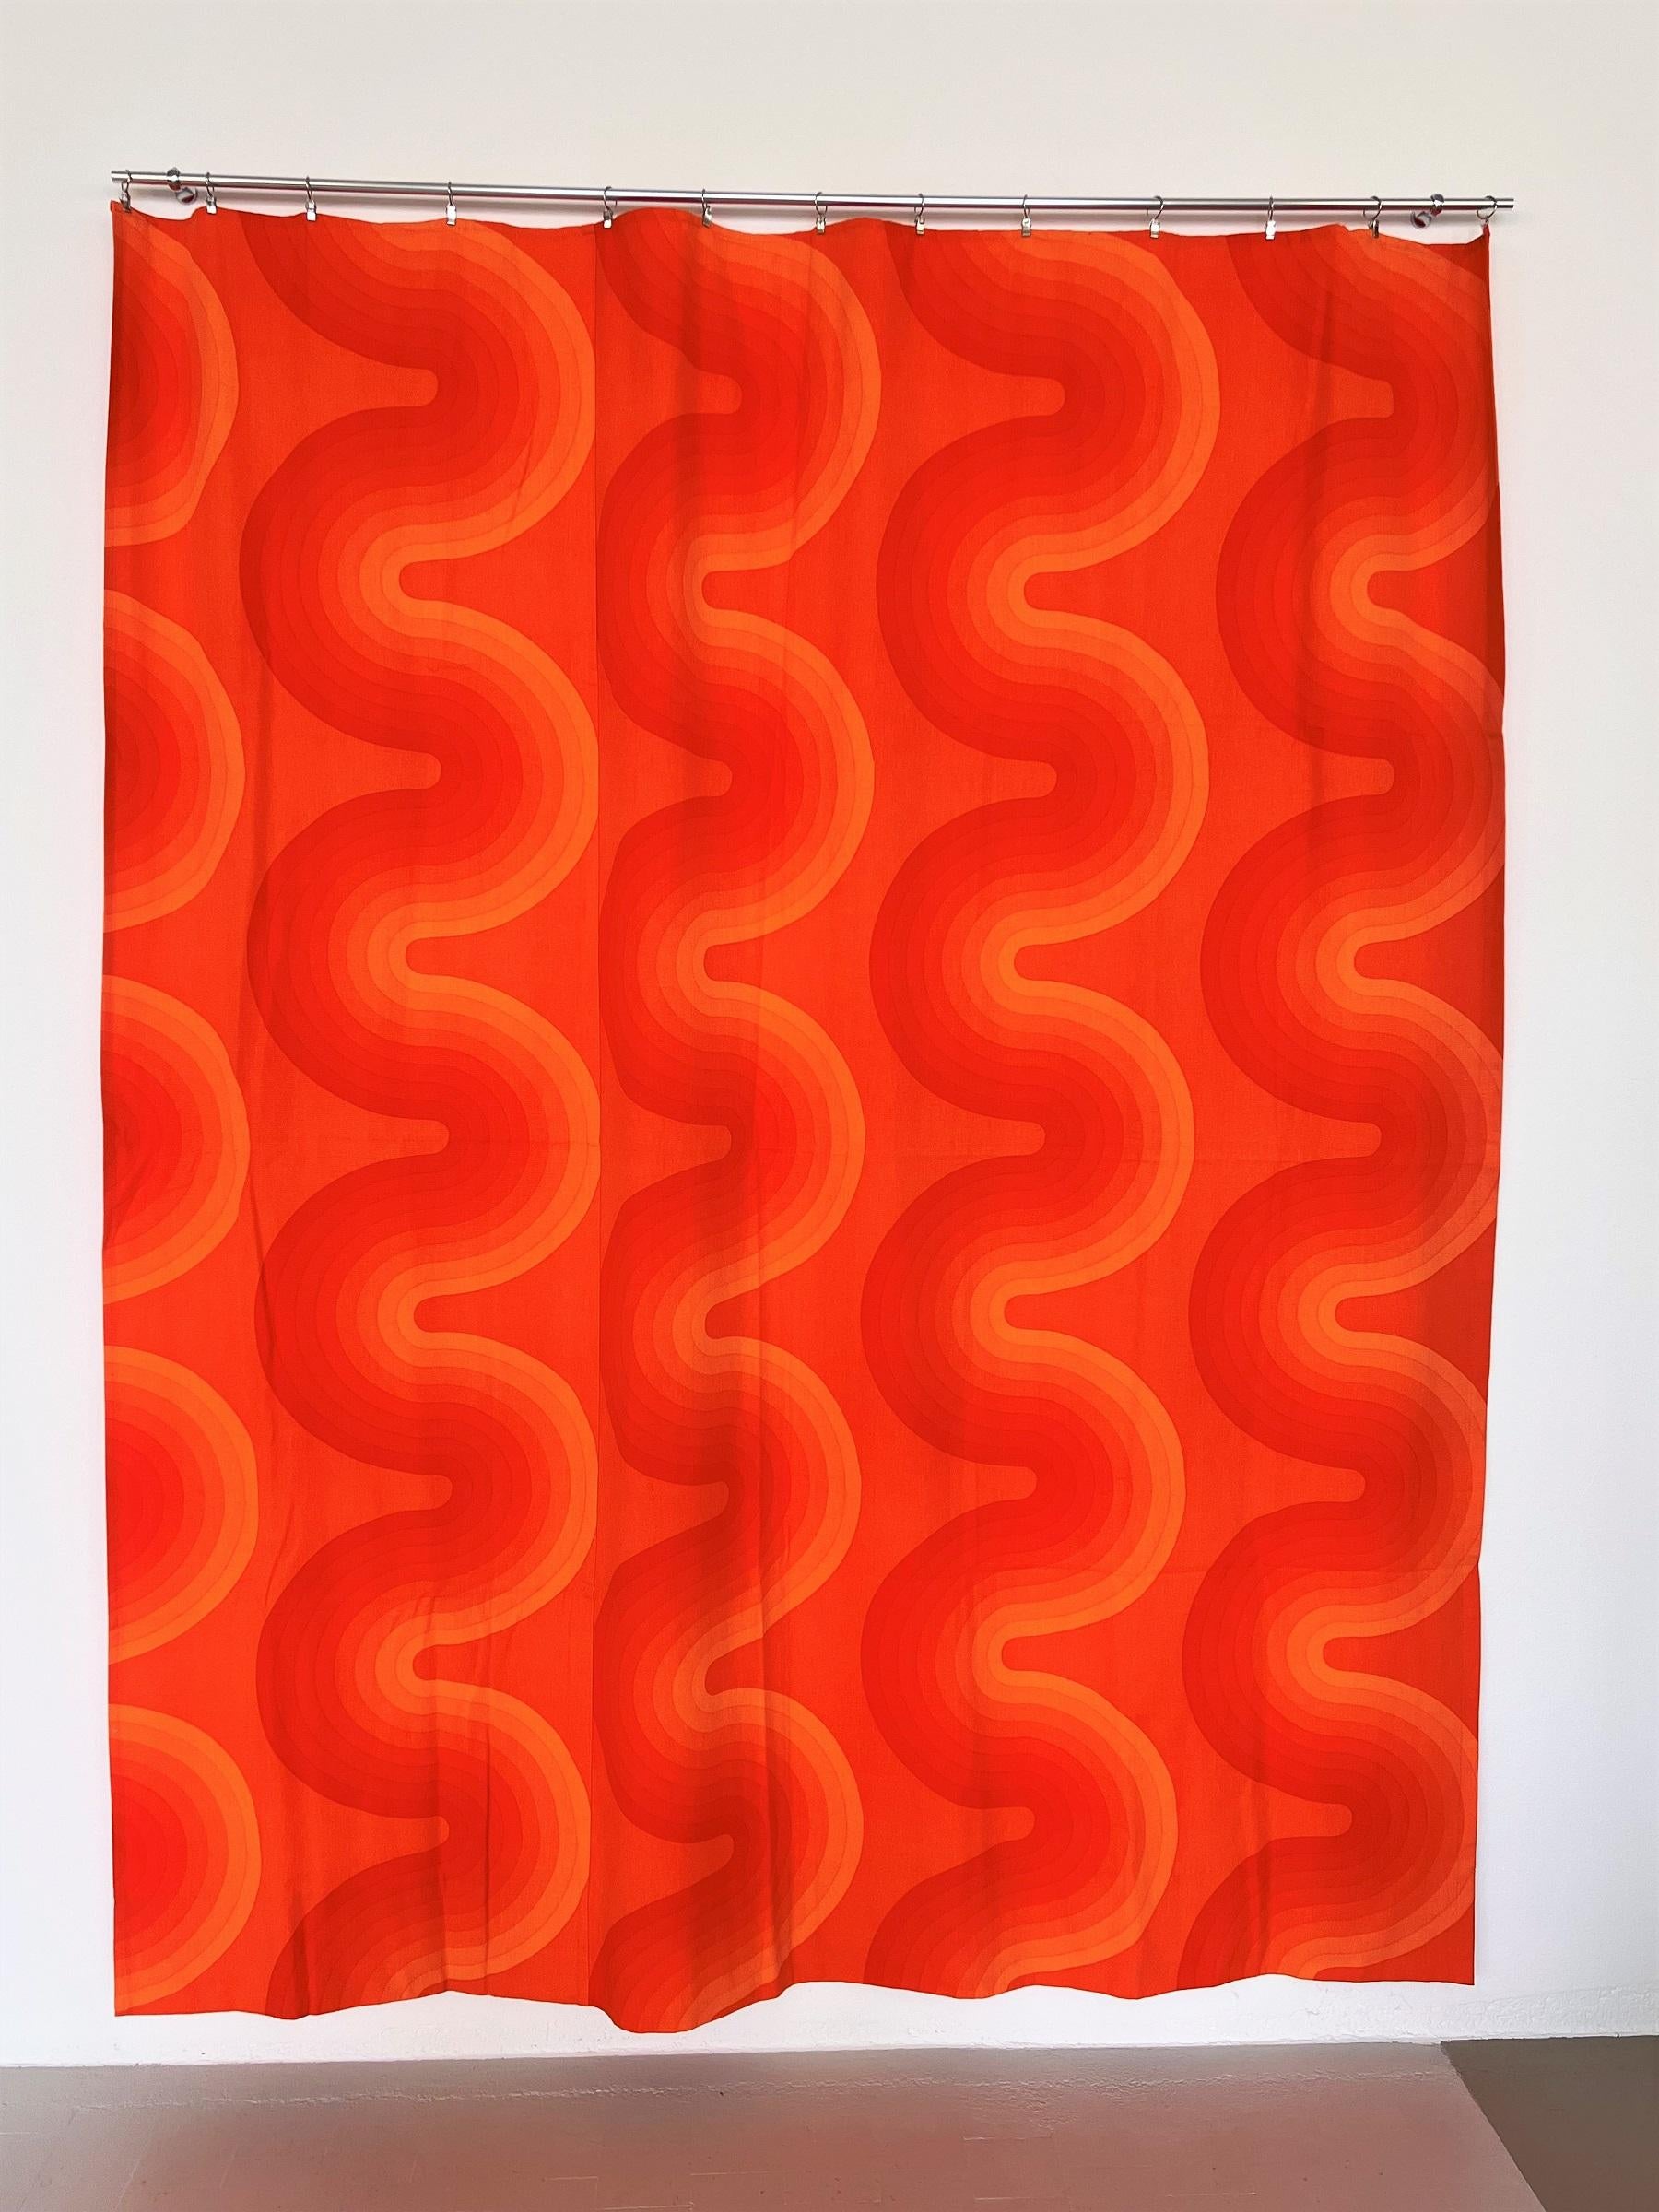 Puissant panneau de tissu original conçu par Verner Panton en 1969-1971.
100% coton, Art. VP-ON-22. Collection Mira-X Décor I., fabriqué en Suisse. 
Le panneau de tissu mesure 79